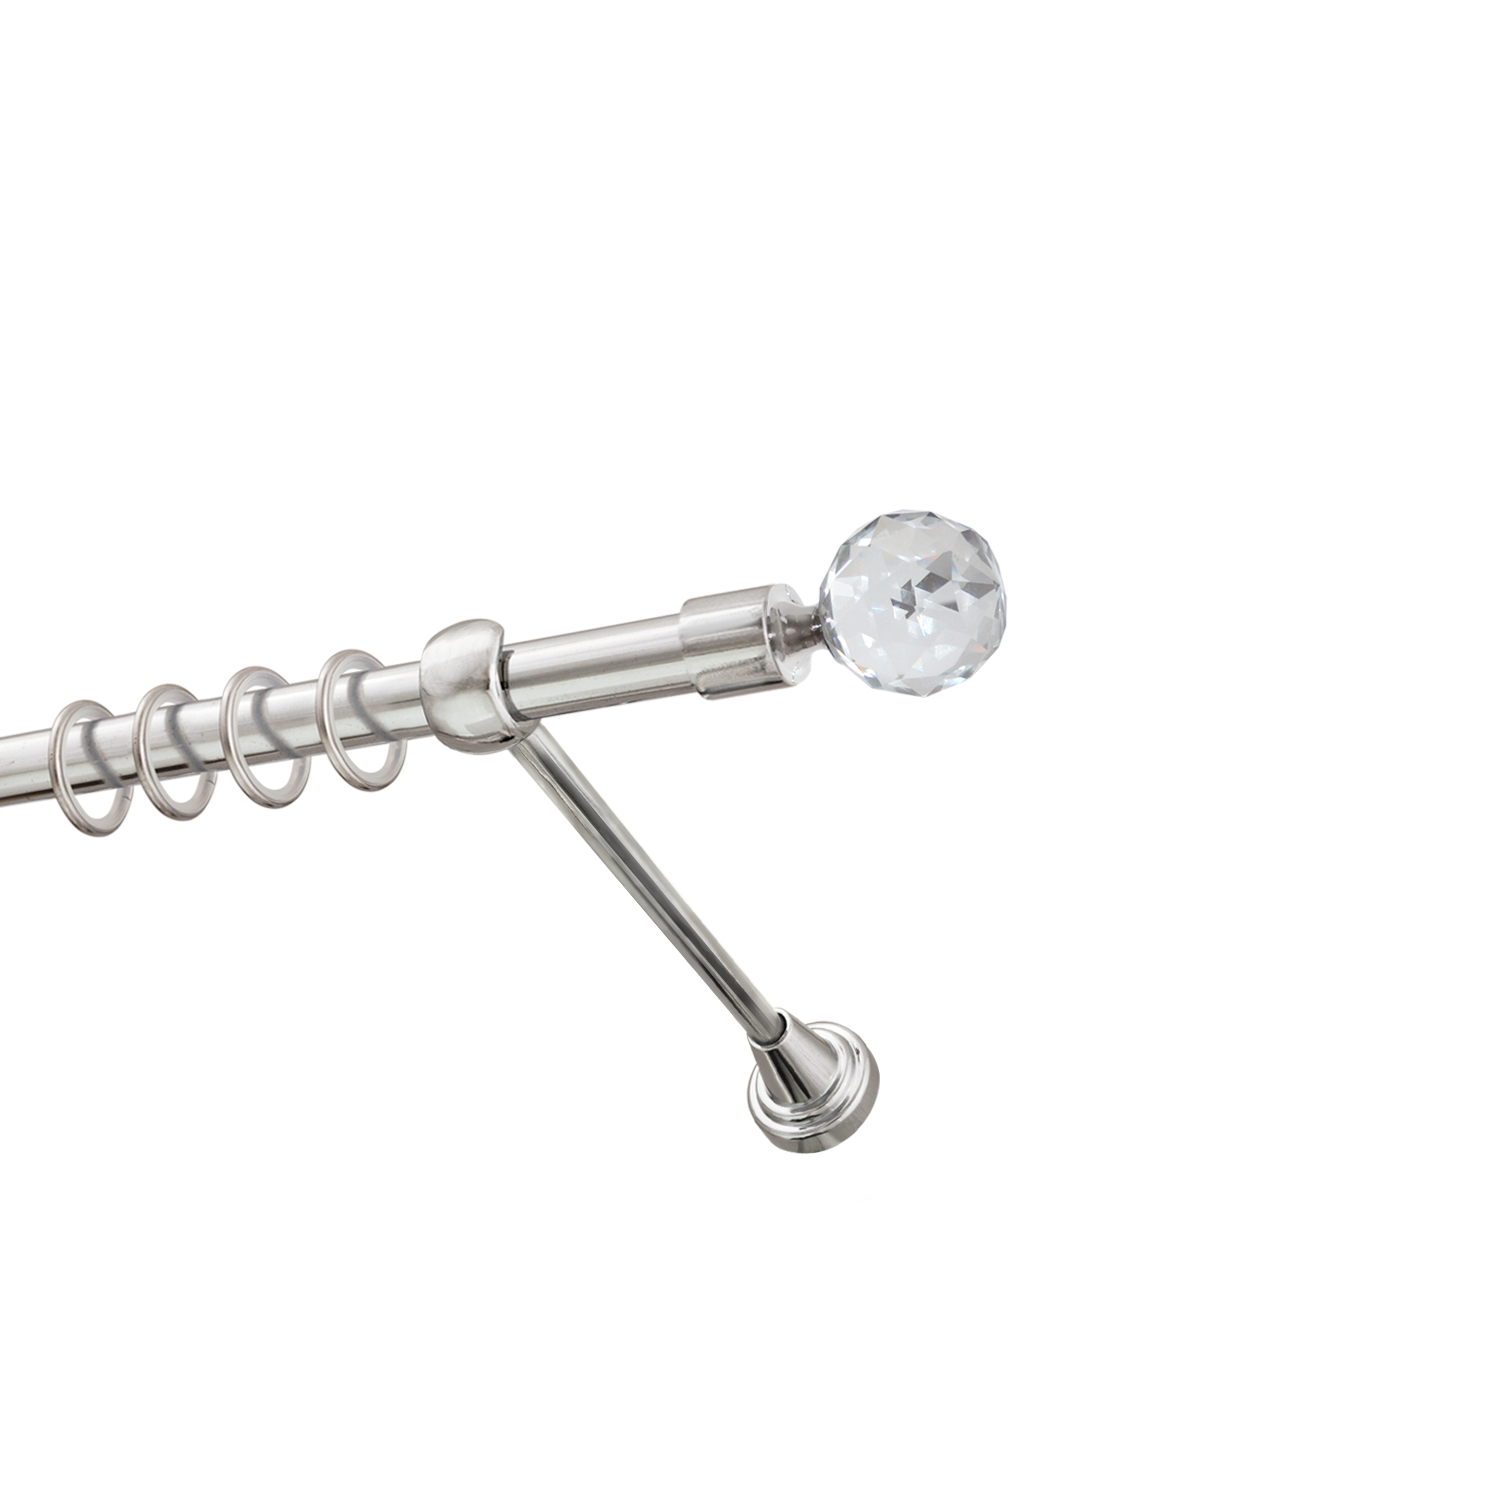 Металлический карниз для штор Карат, однорядный 16 мм, серебро, гладкая штанга, длина 300 см - фото Wikidecor.ru